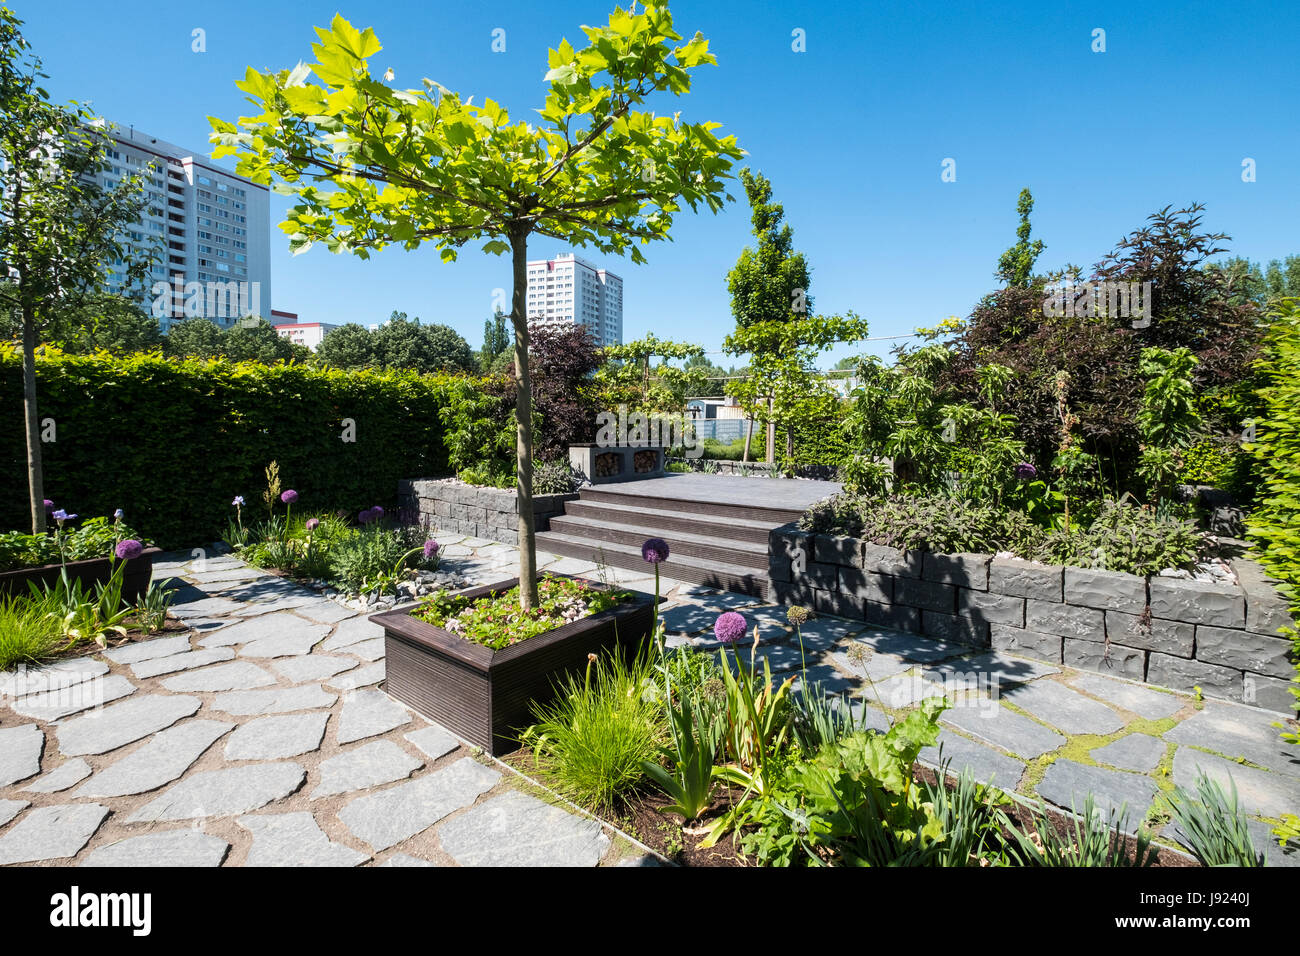 Bandes verts - entre les légumes et les lits, - des idées pour les jardins urbains à l'AGI 2017 Festival International des jardins (International Garten Ausst Banque D'Images